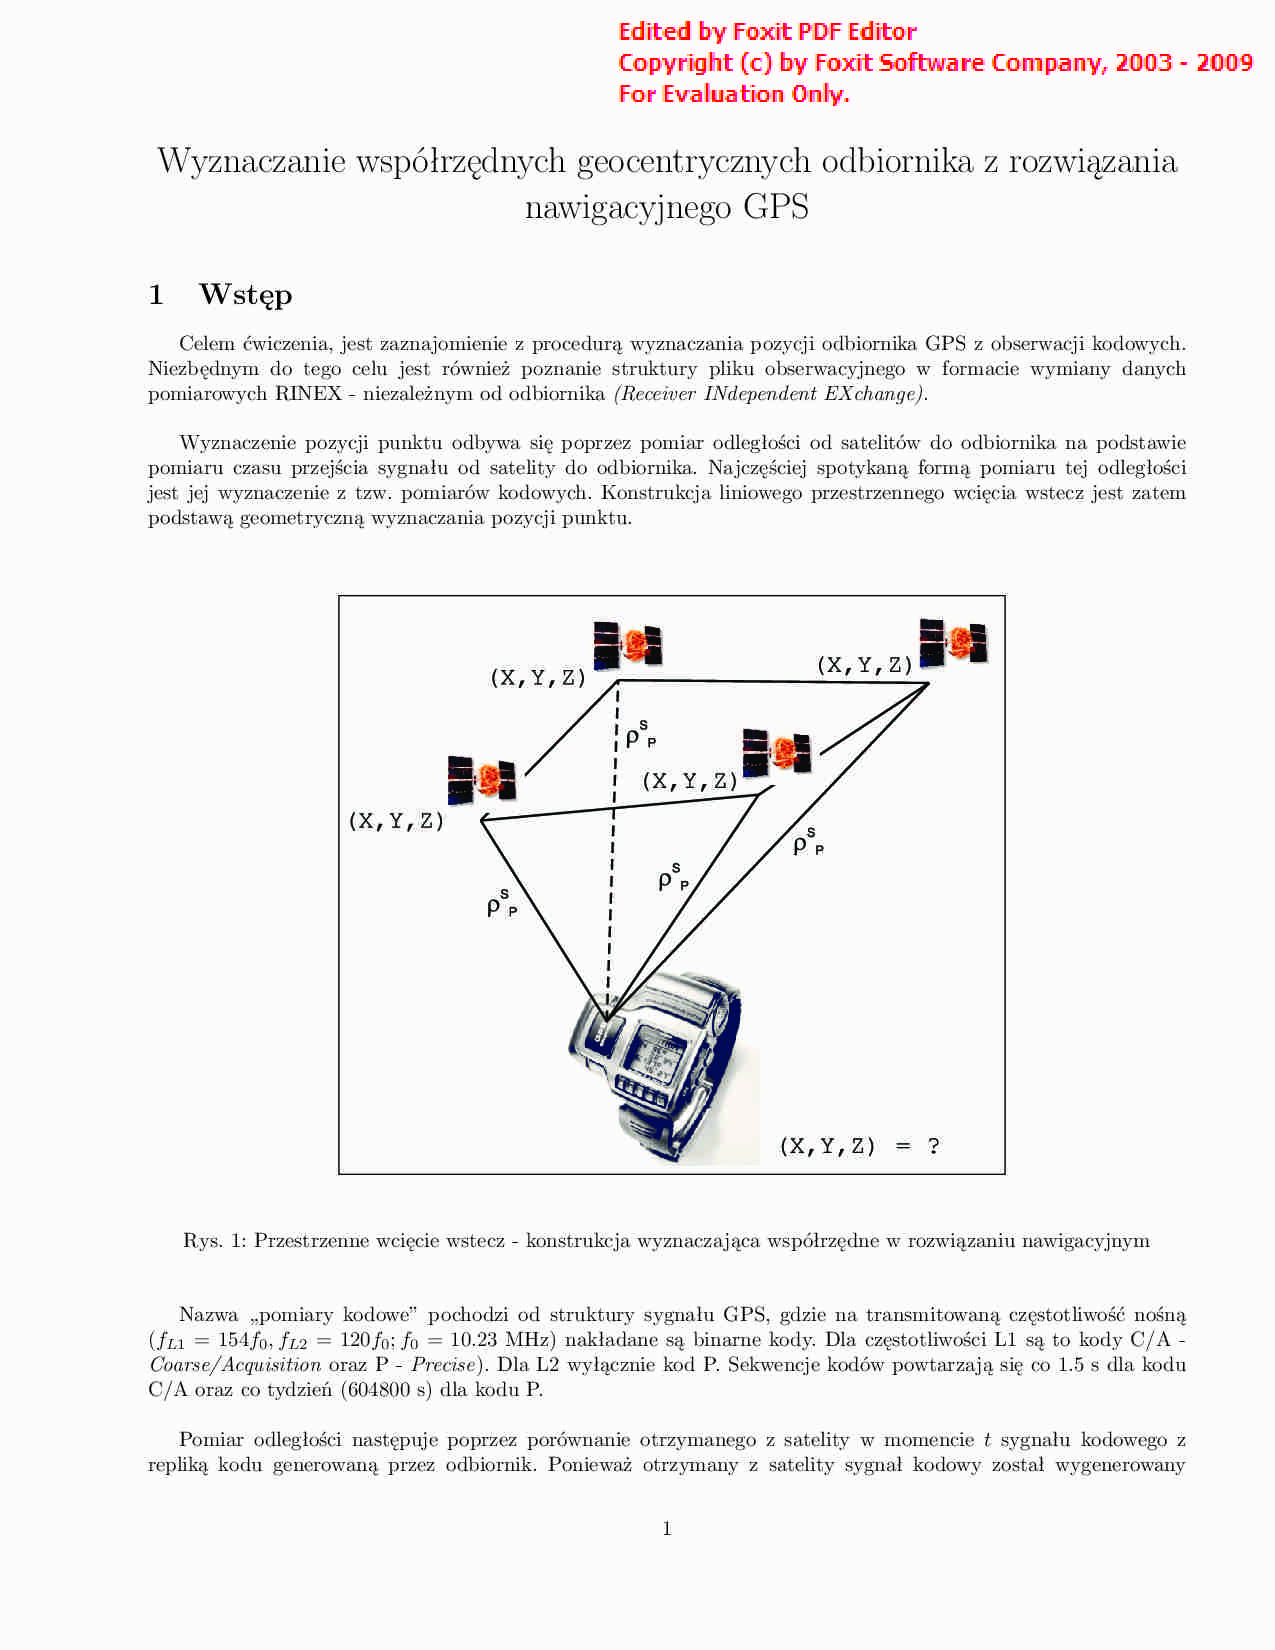 Wyznaczanie współrzędnych geocentrycznych odbiornika z rozwiązania nawigacyjnego GPS - strona 1